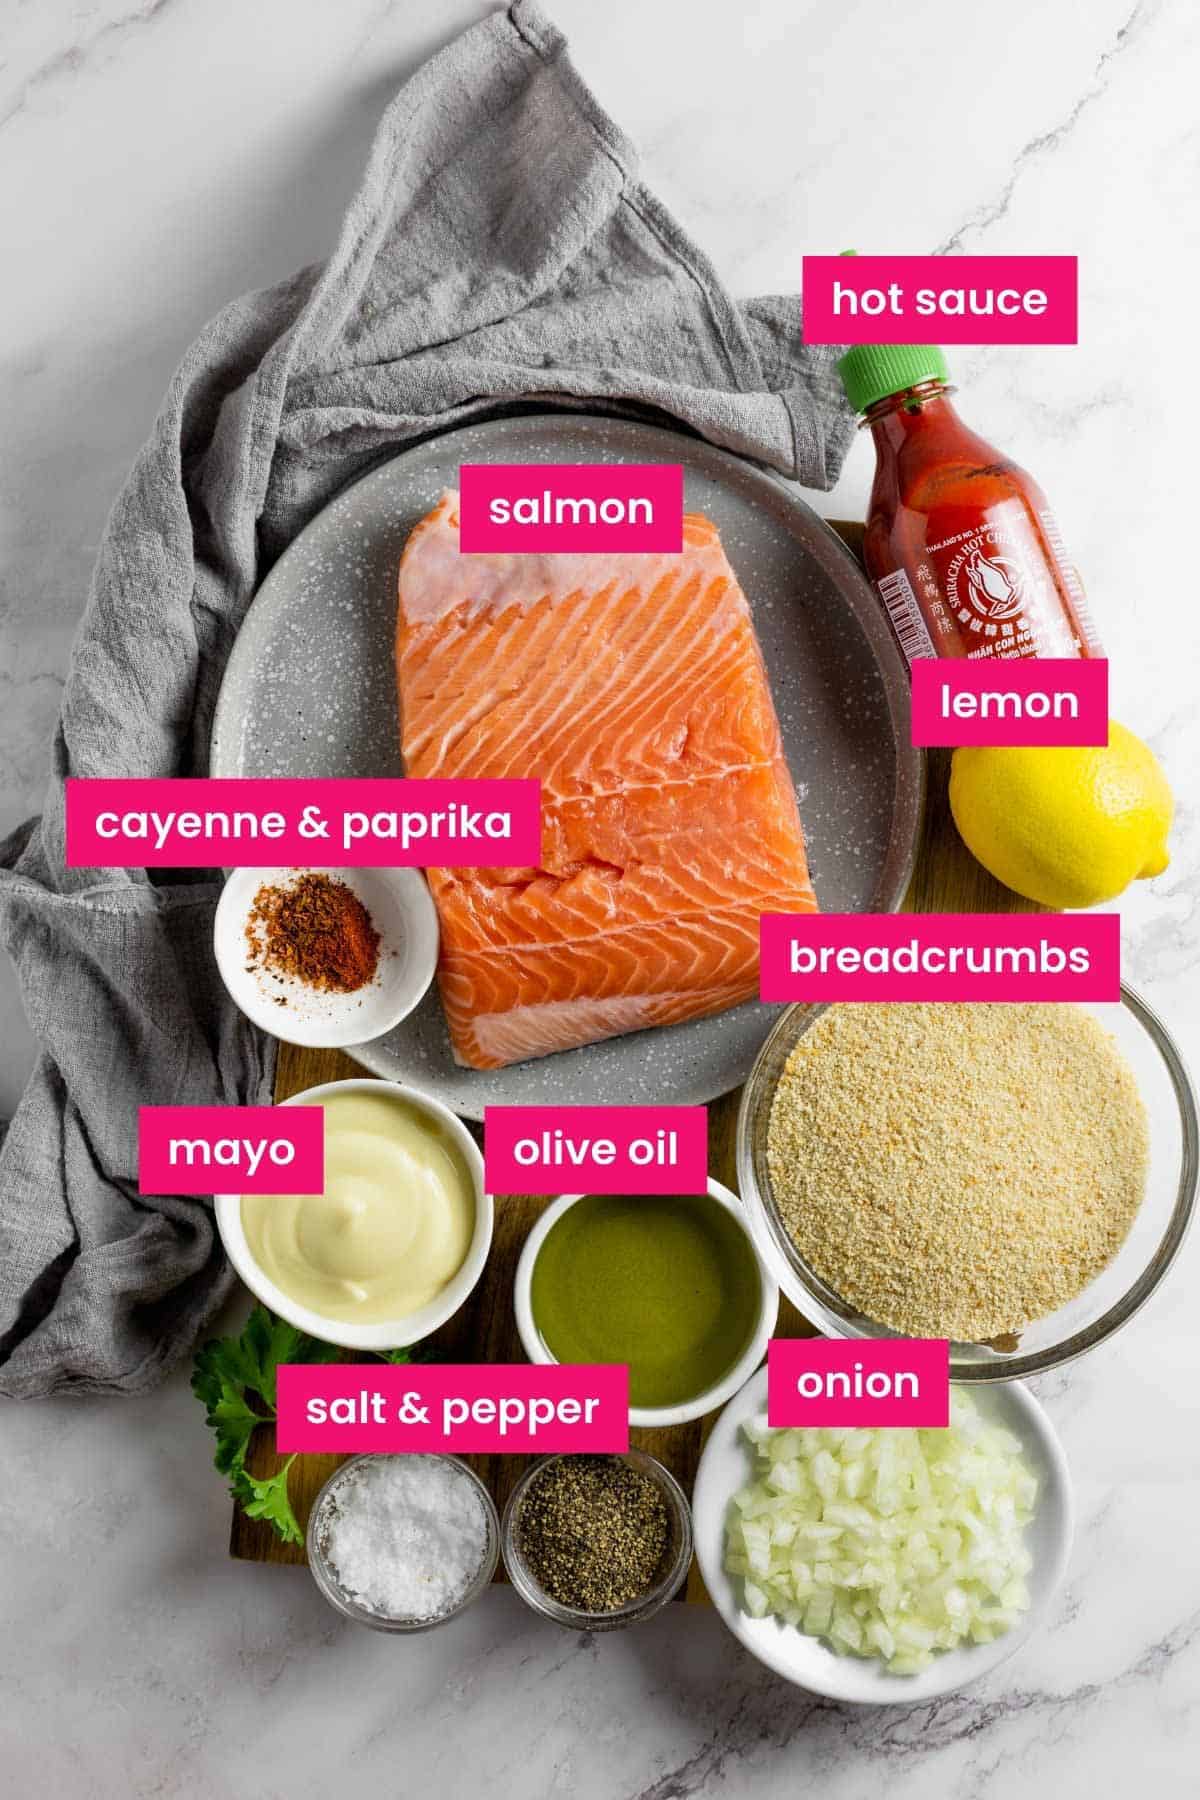 salmon burger ingredients